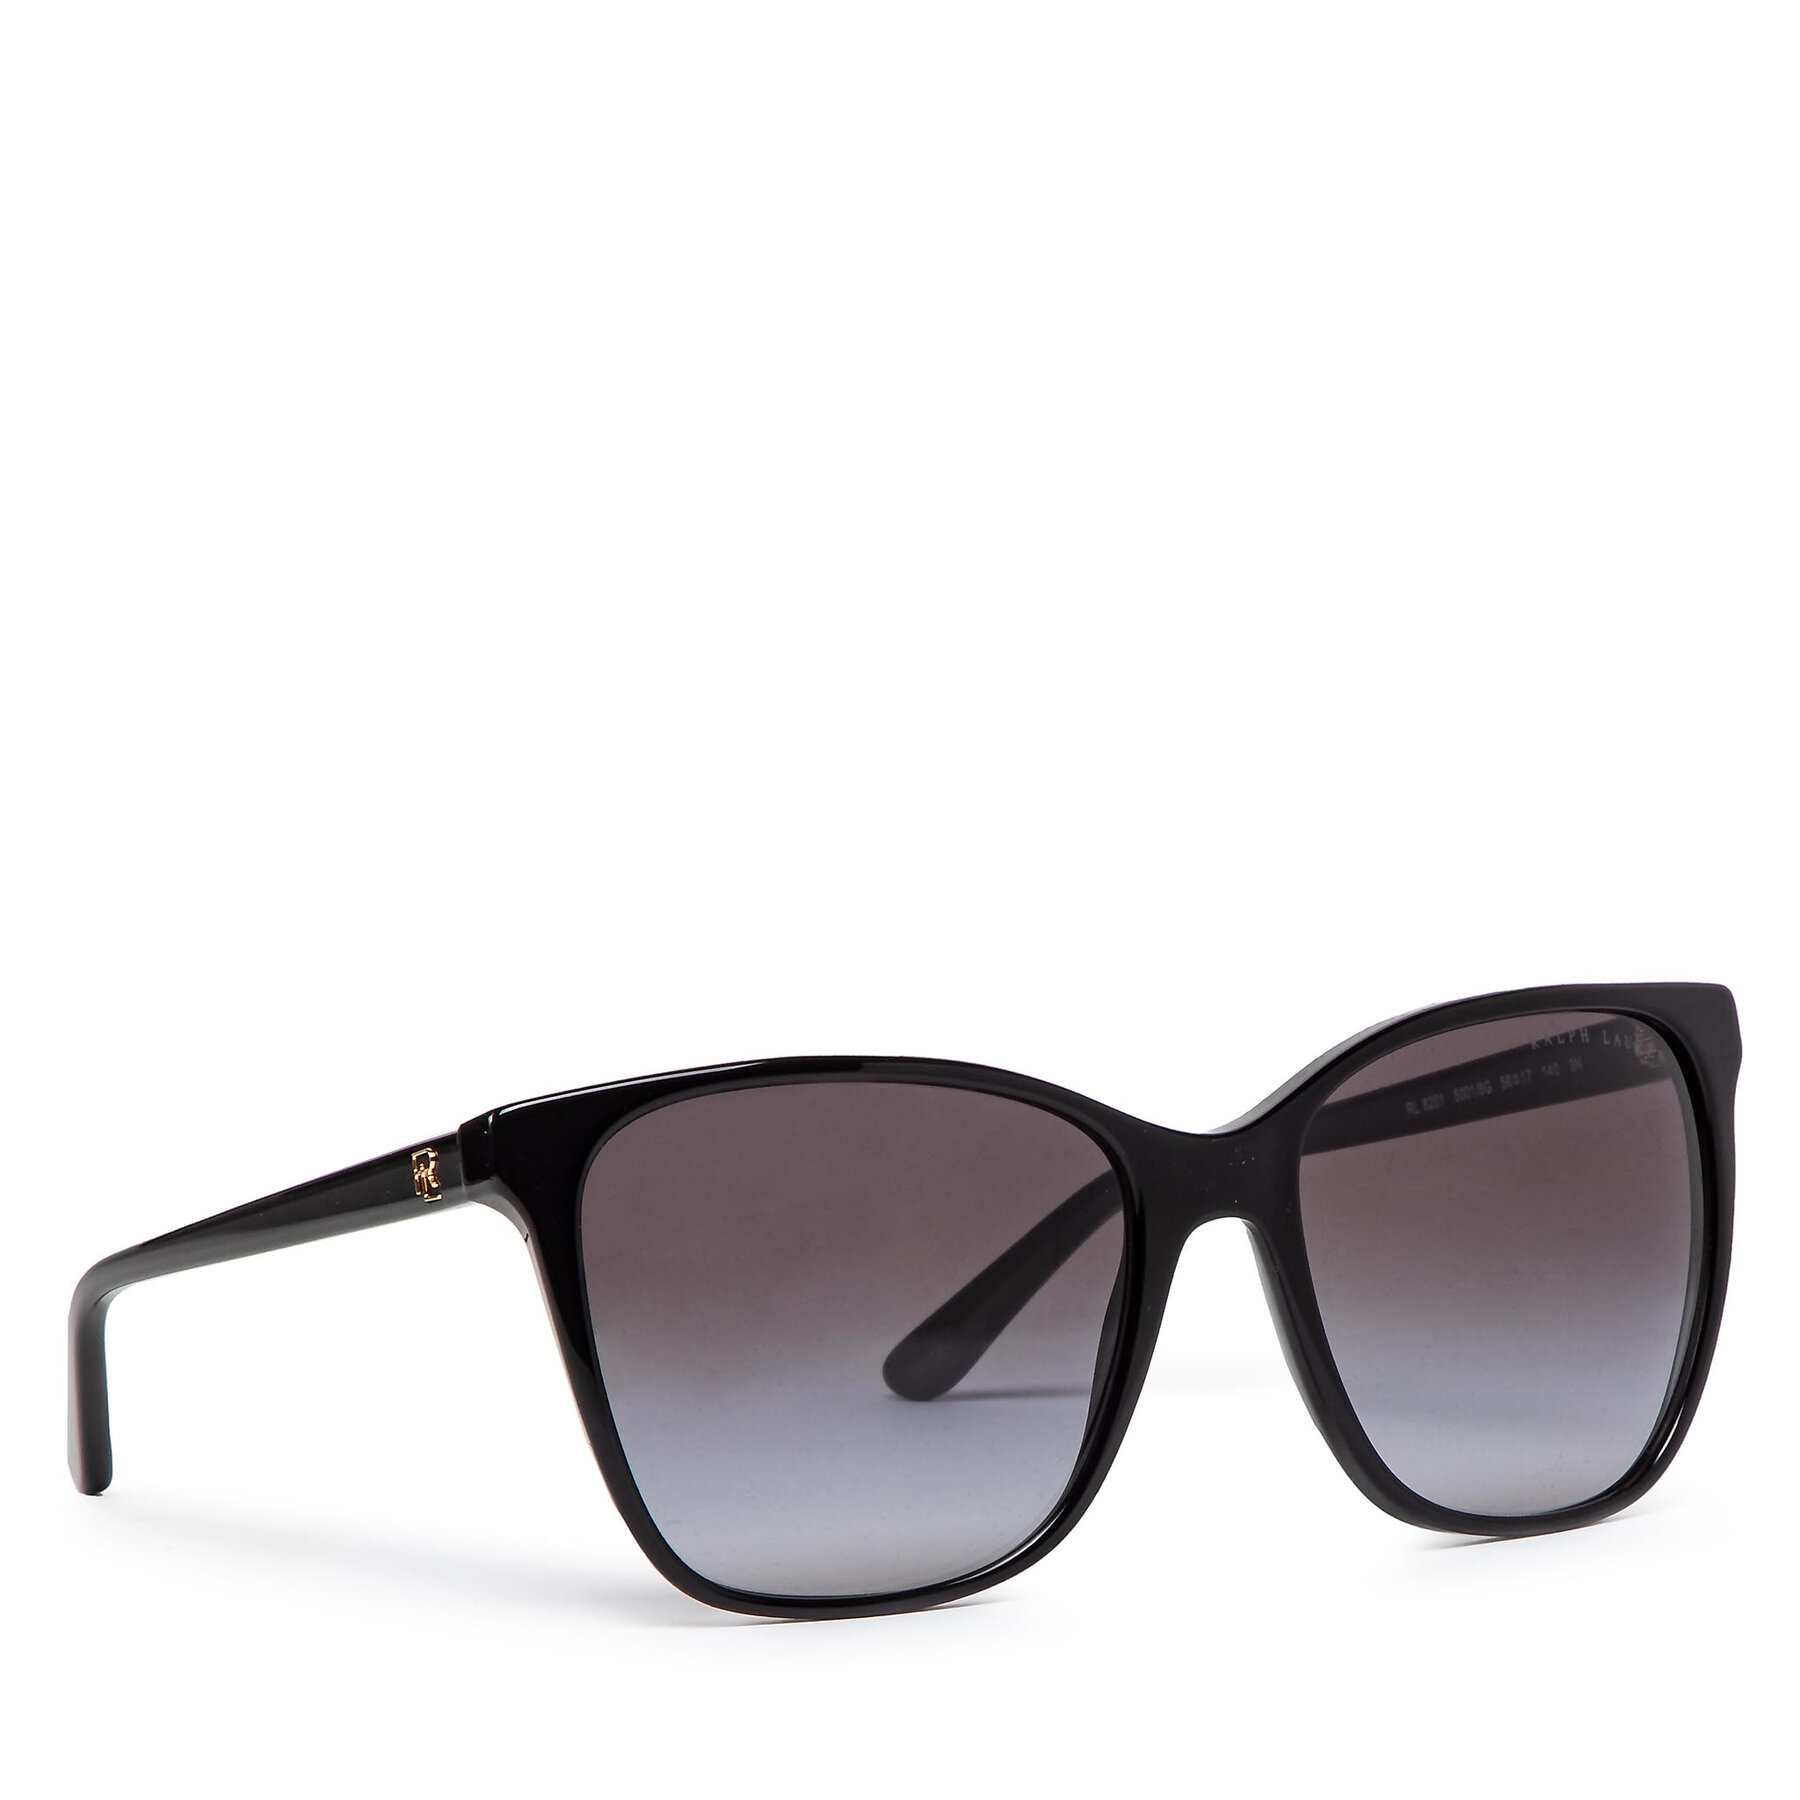 Sončna očala Lauren Ralph Lauren 0RL8201 50018G Shiny Black/Gradient Grey